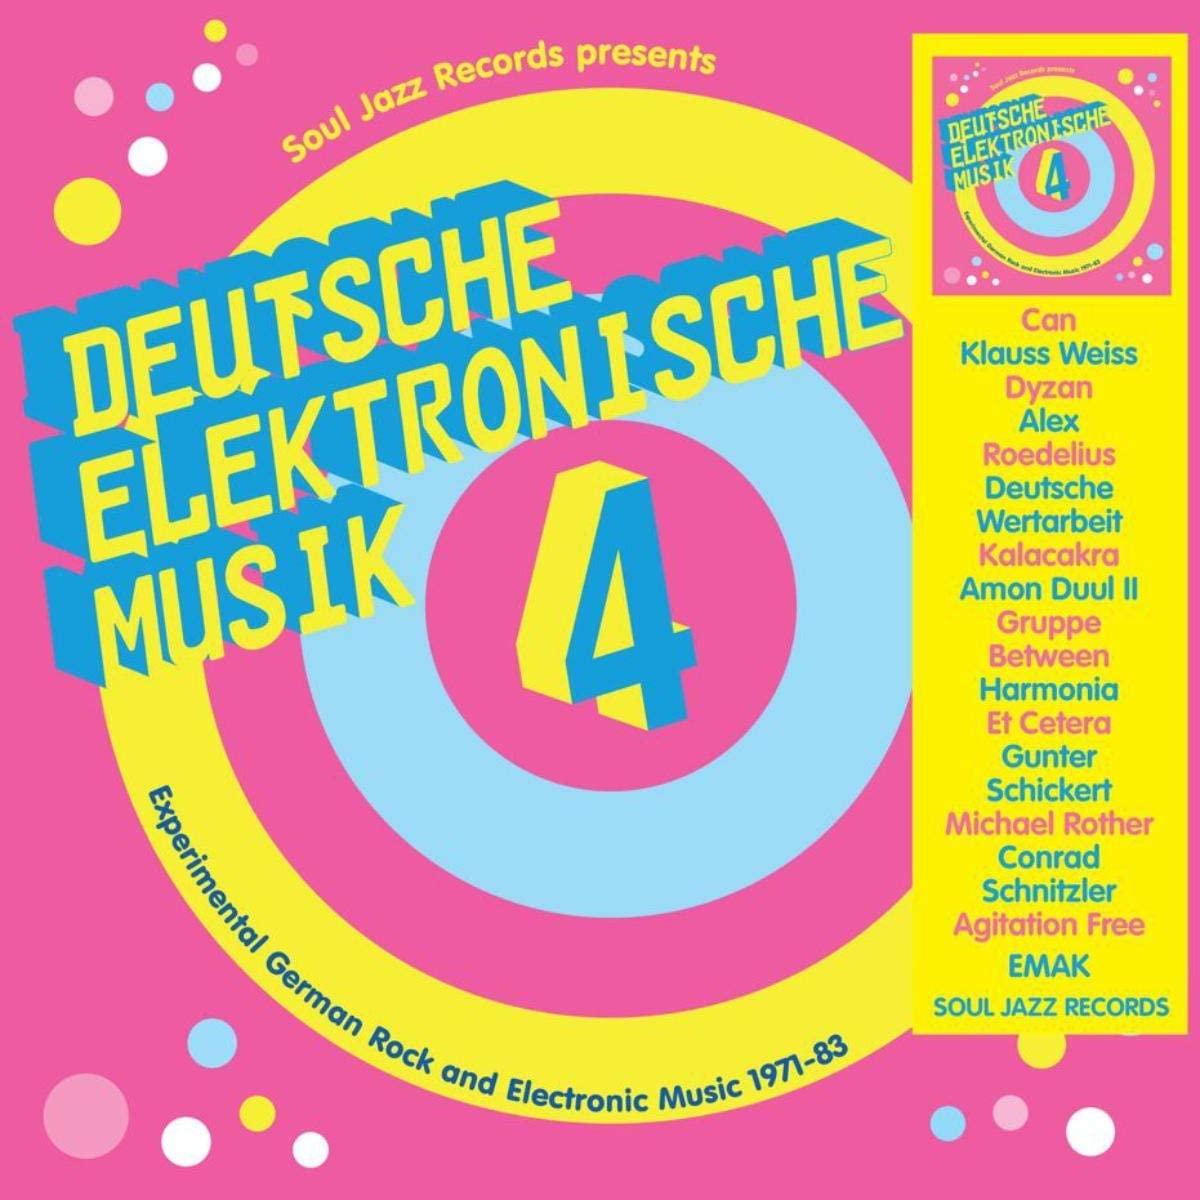 Deutsche Elektronische Musik 4 – Experimental German Rock and Electronic Music 1971-83 - 2CD